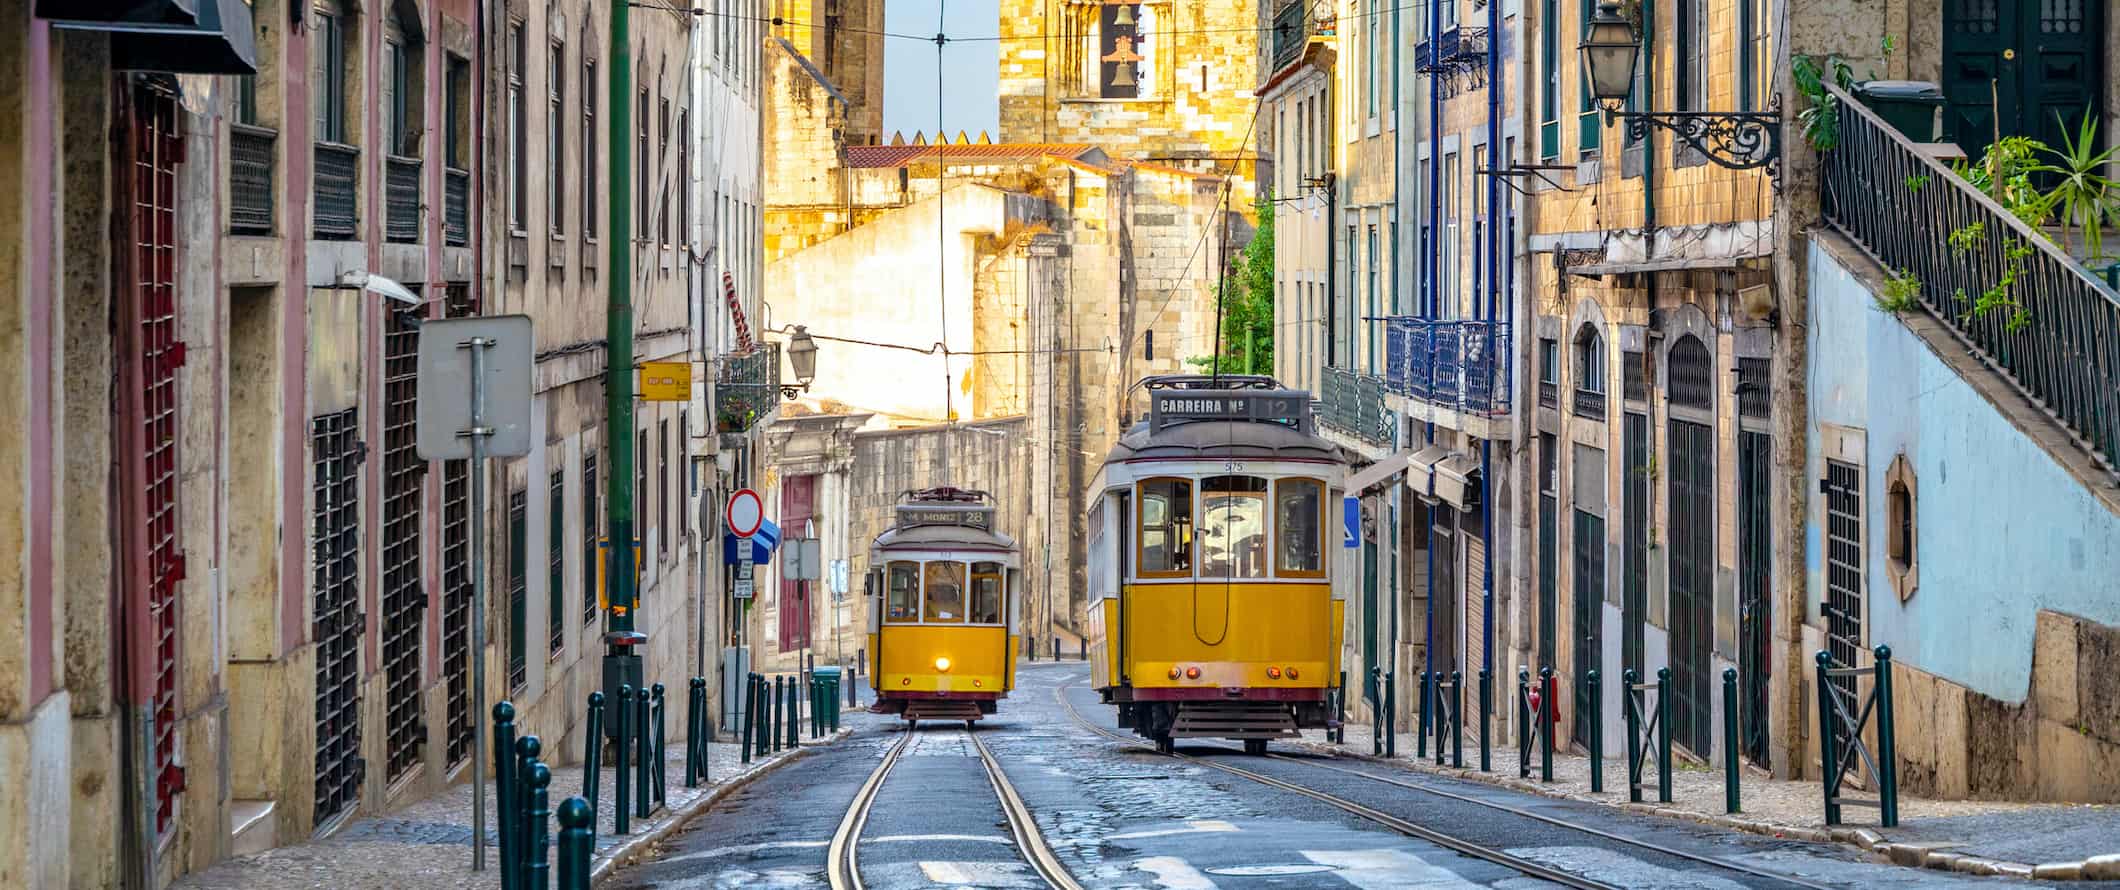 Velhos carros de rua amarela em uma rua estreita na colorida cidade de Lisboa, Portugal